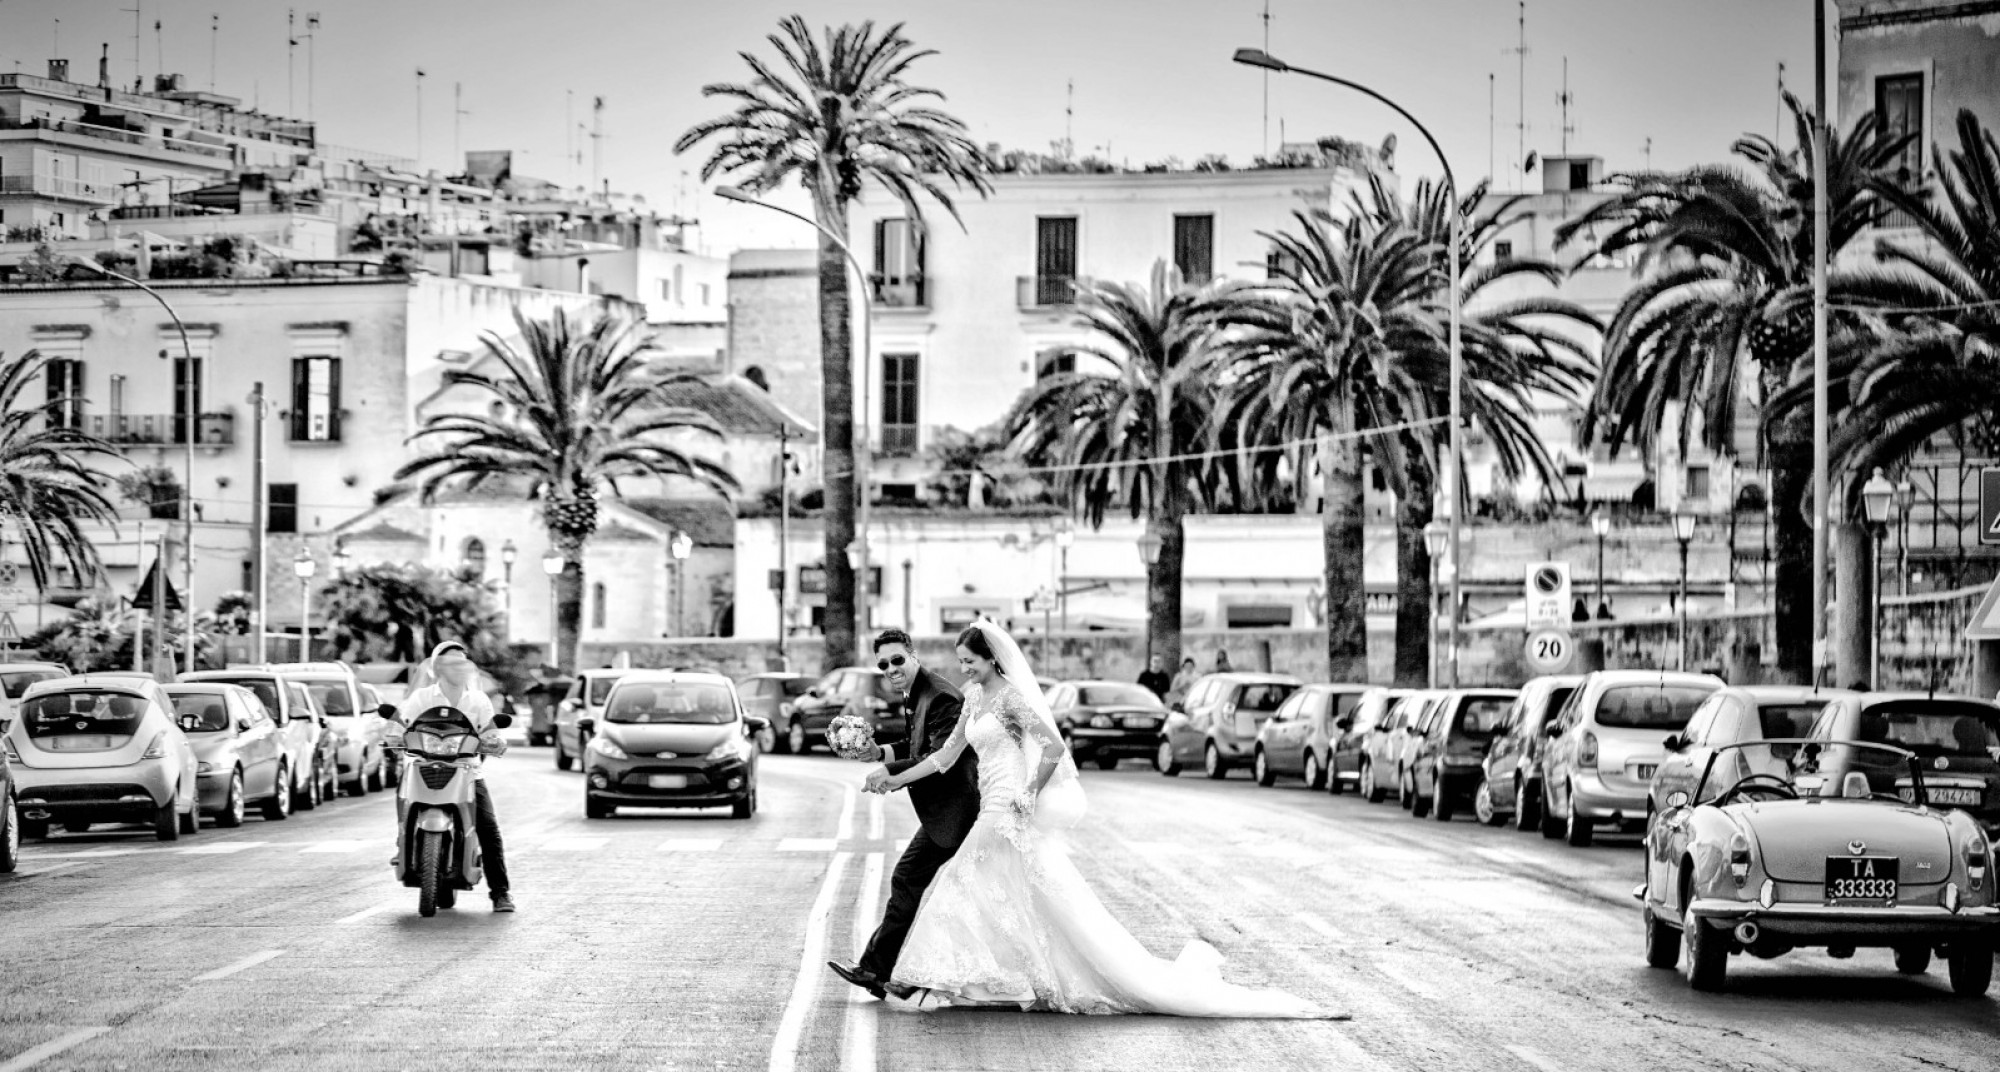 Matrimonio stile street - Giovanni Dicillo - Triggiano BA